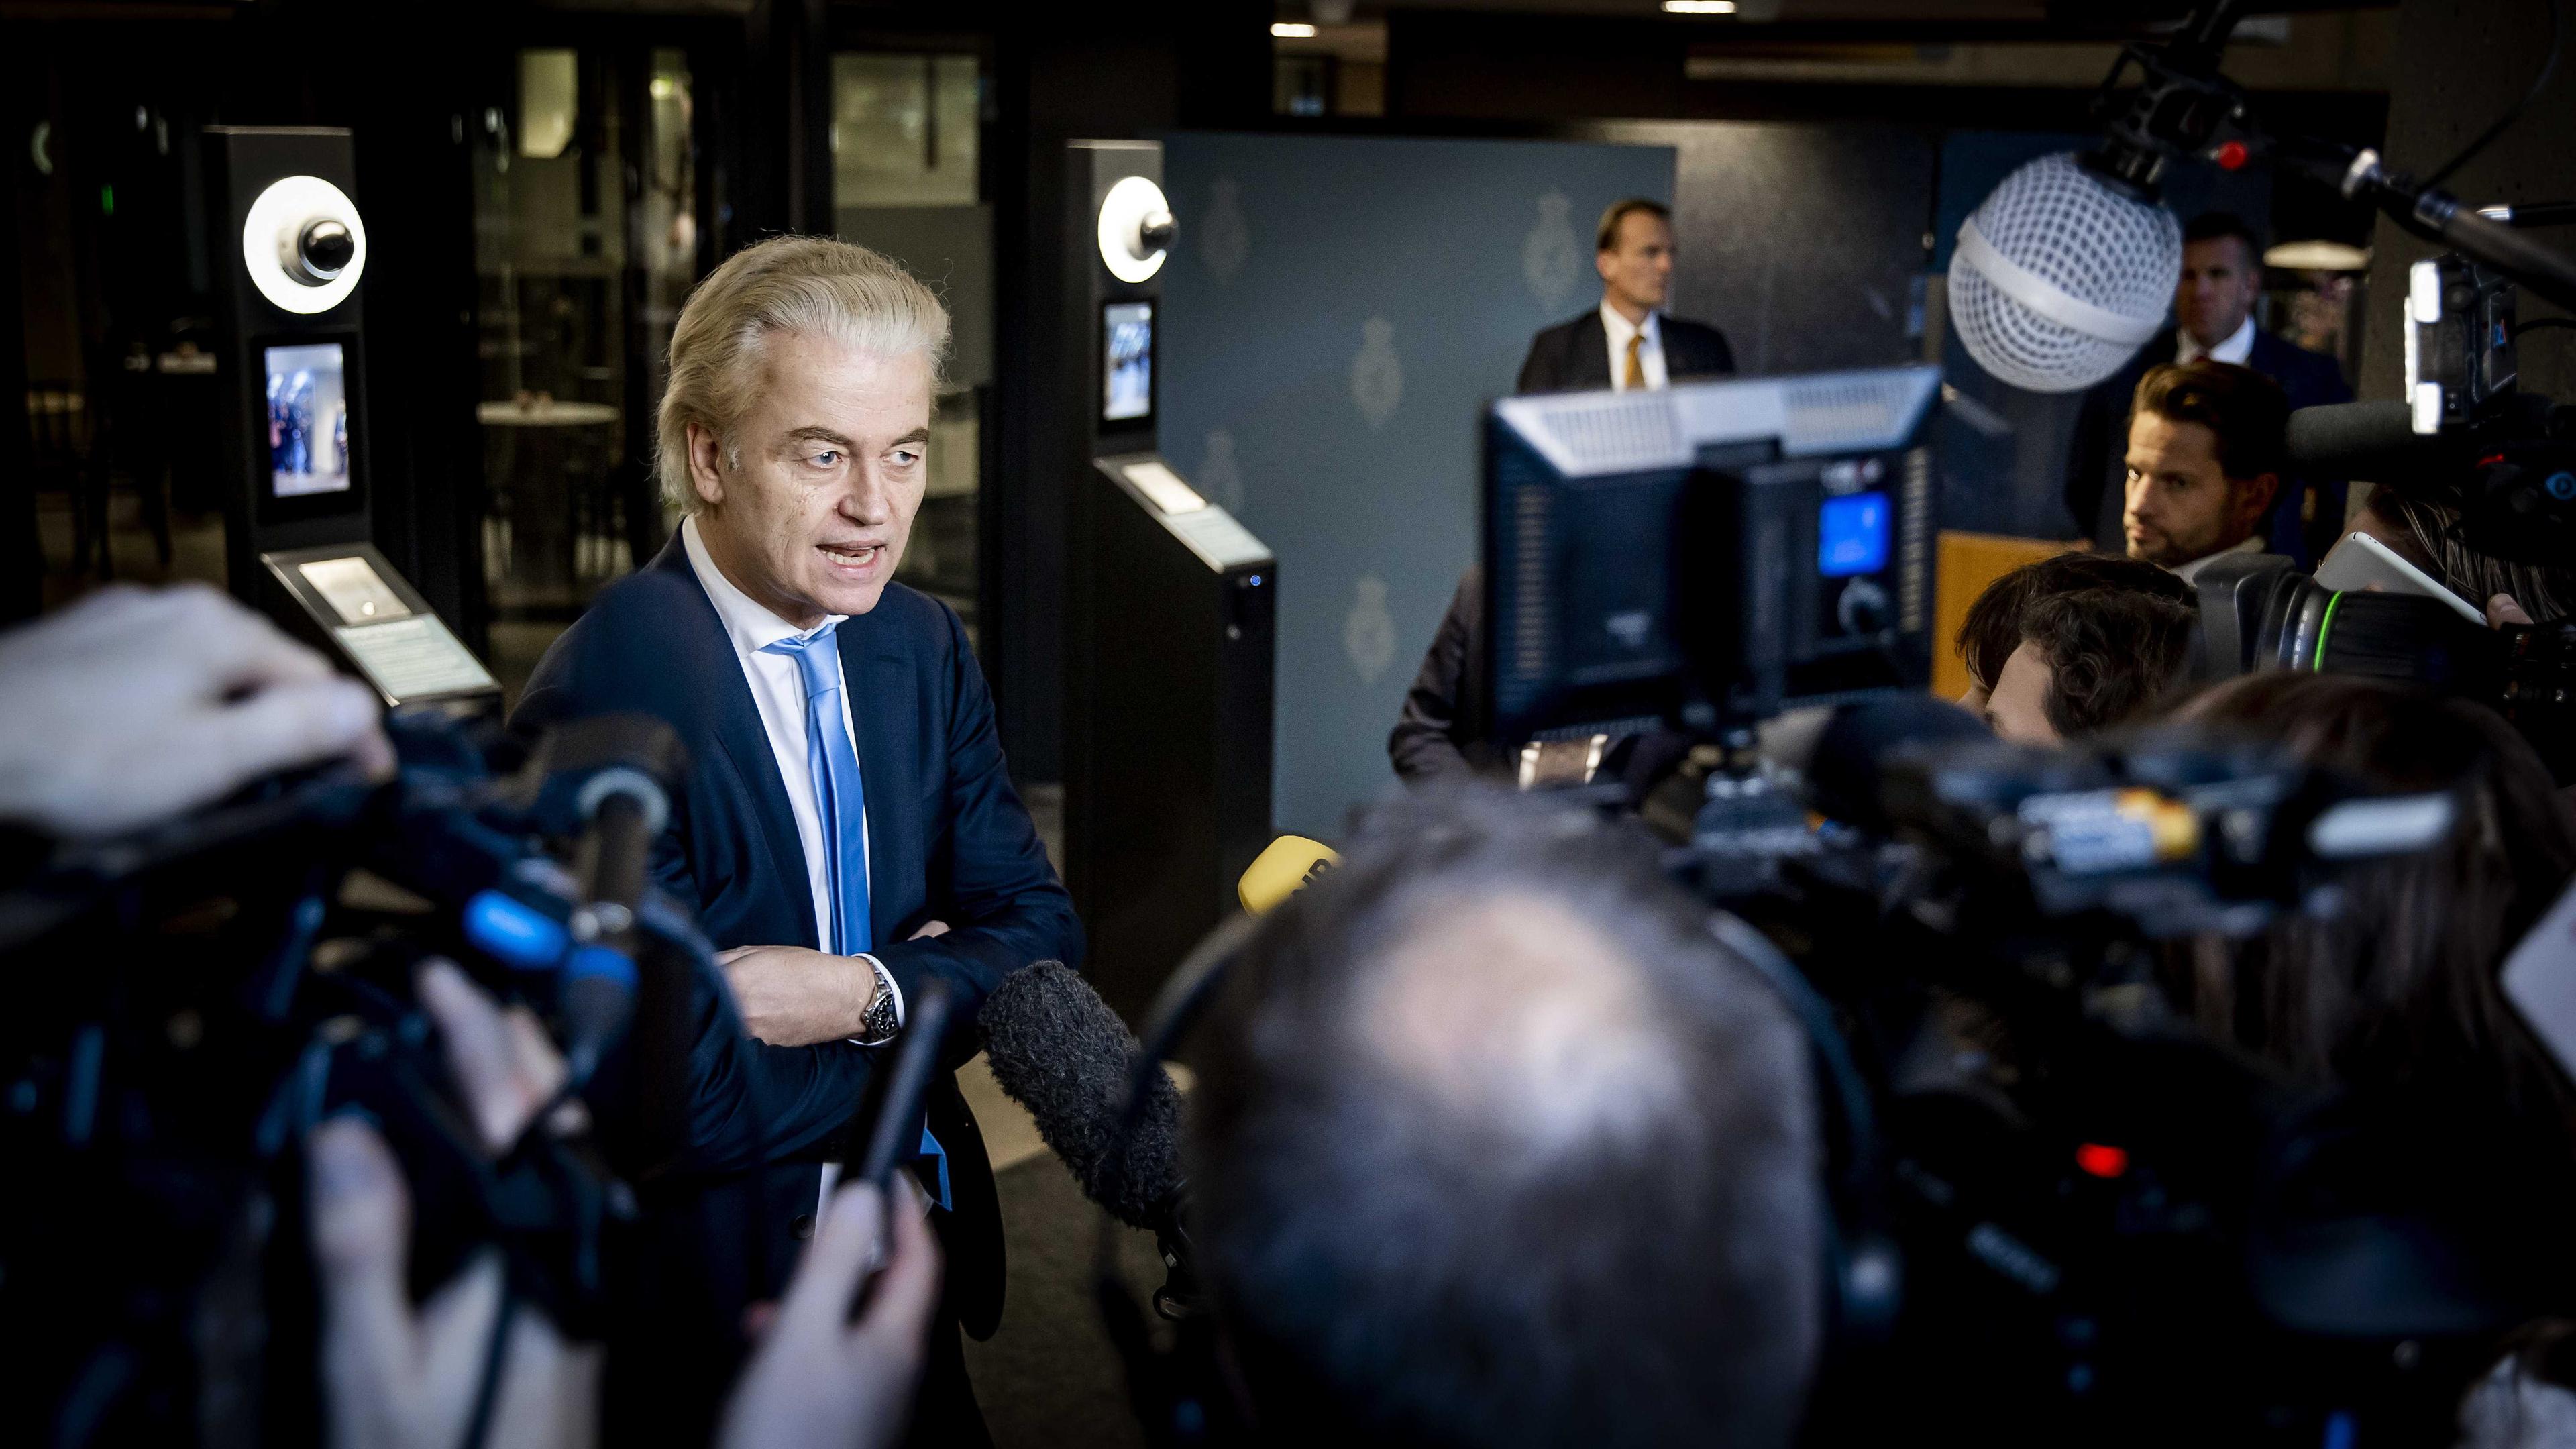 Rechtspopulist Geert Wilders gibt eine Pressekonferenz zur Regierungsbildung in den Niederlanden ab.